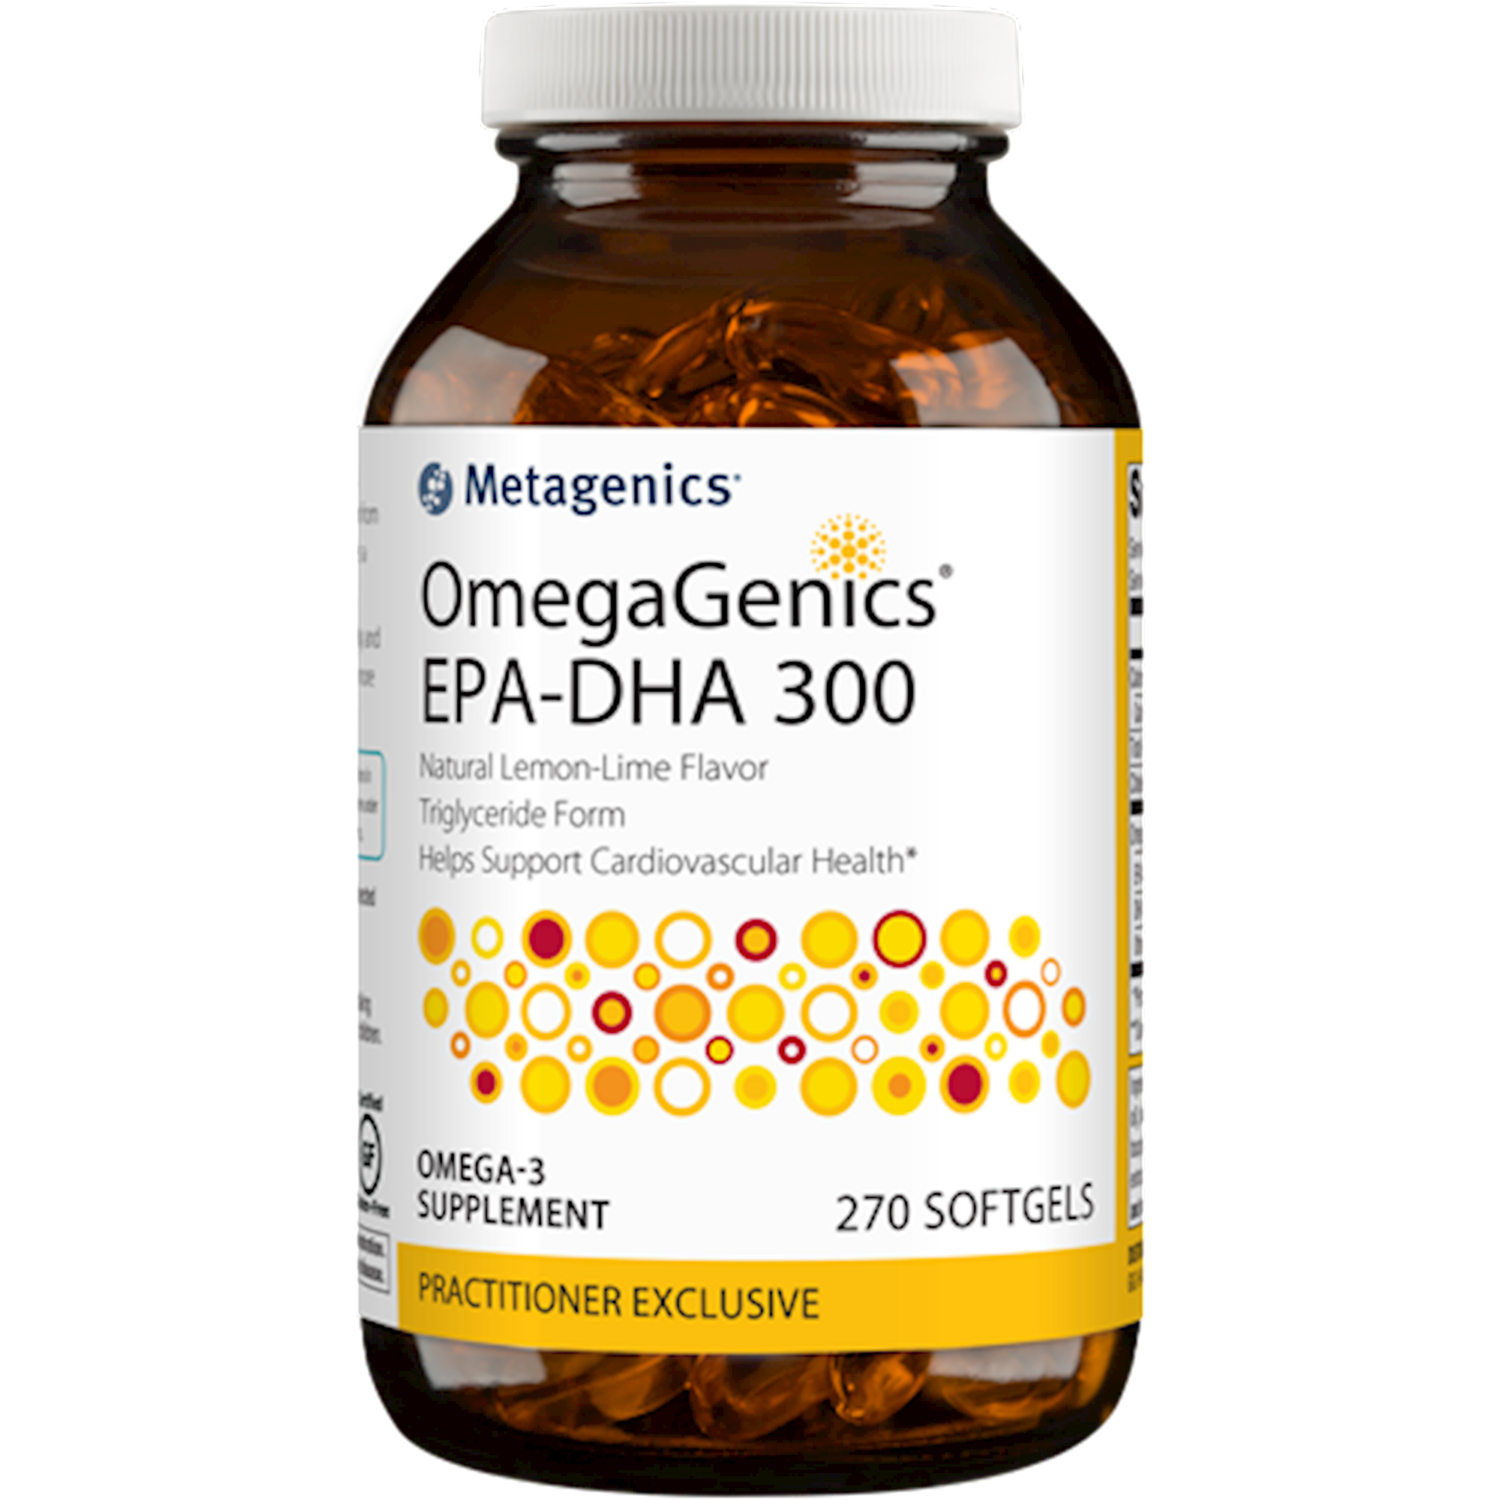 OmegaGenics EPA-DHA 300 270 gels Metagenics